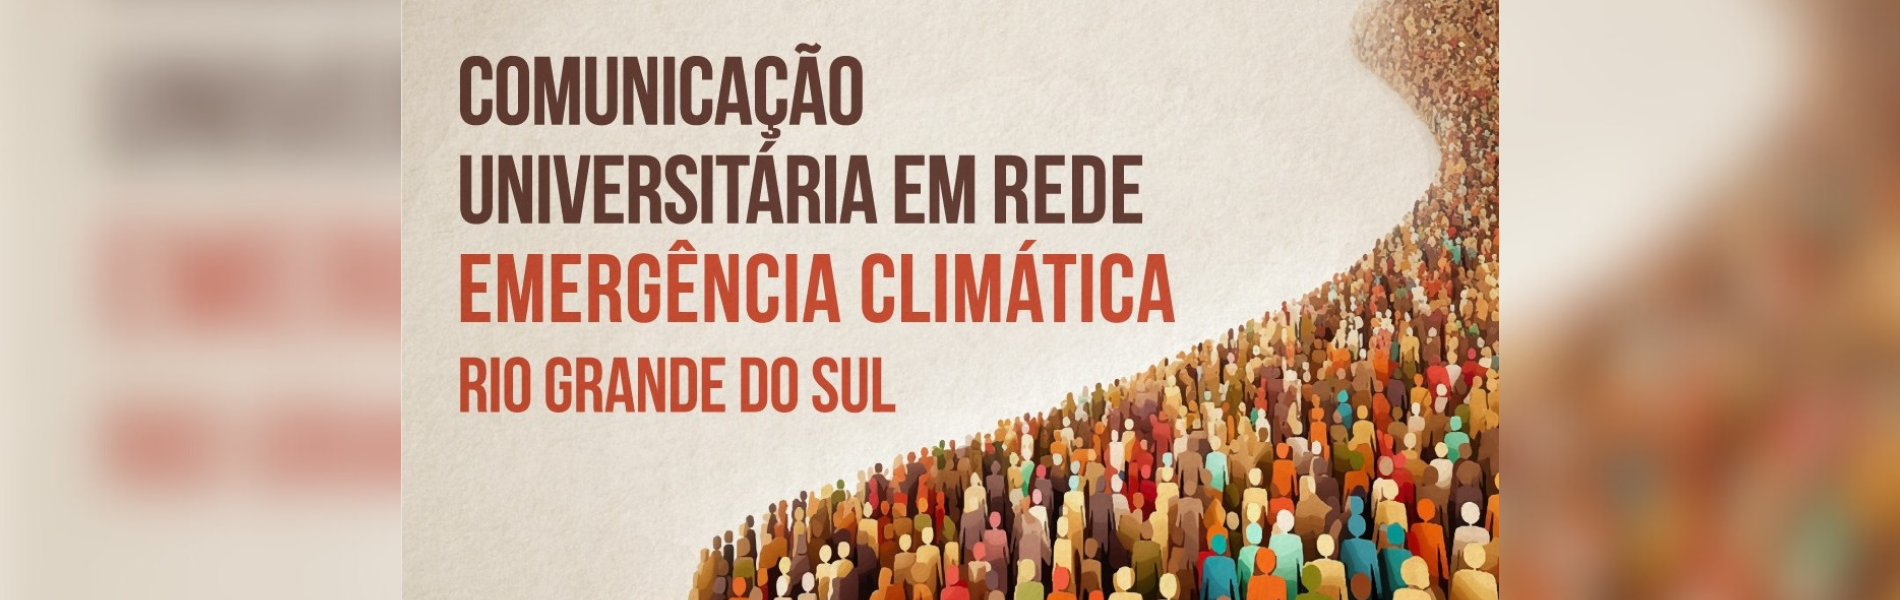 Imagem com desenho de pessoas e o texto: “Comunicação Universitária em Rede - Emergência Climática Rio Grande do Sul”